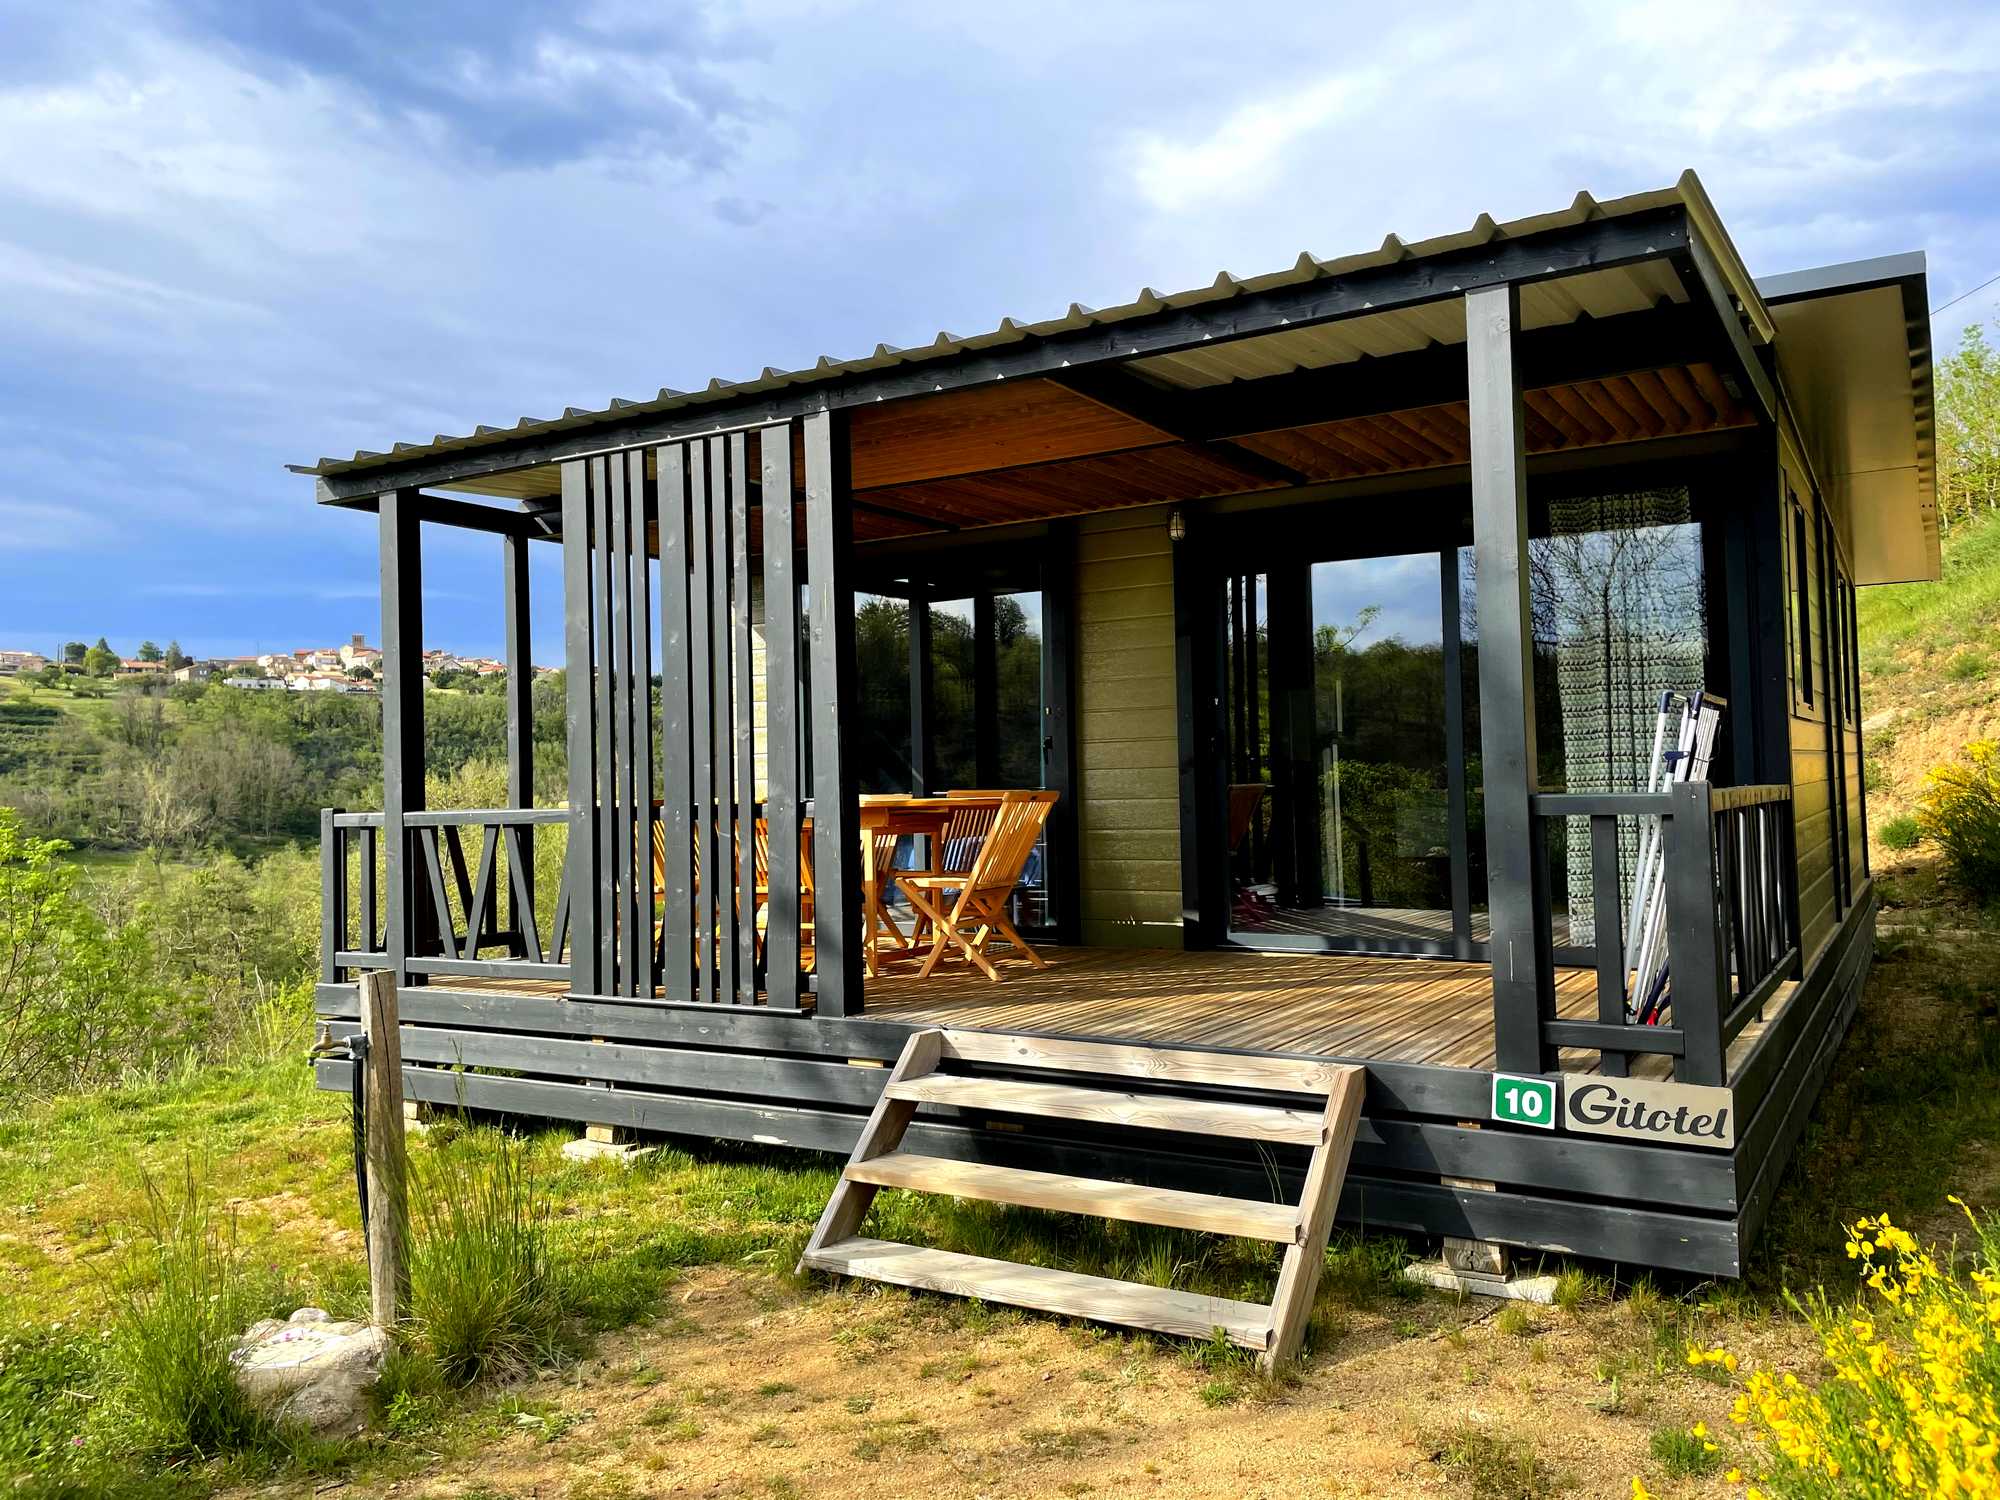 Mietunterkunft - Chalet Grand Panoramic 3 Schlafzimmer - 33M2, Überdachte Terrasse Von 14M2 Neu Für 2020 - Sites et Paysages L'Oasis